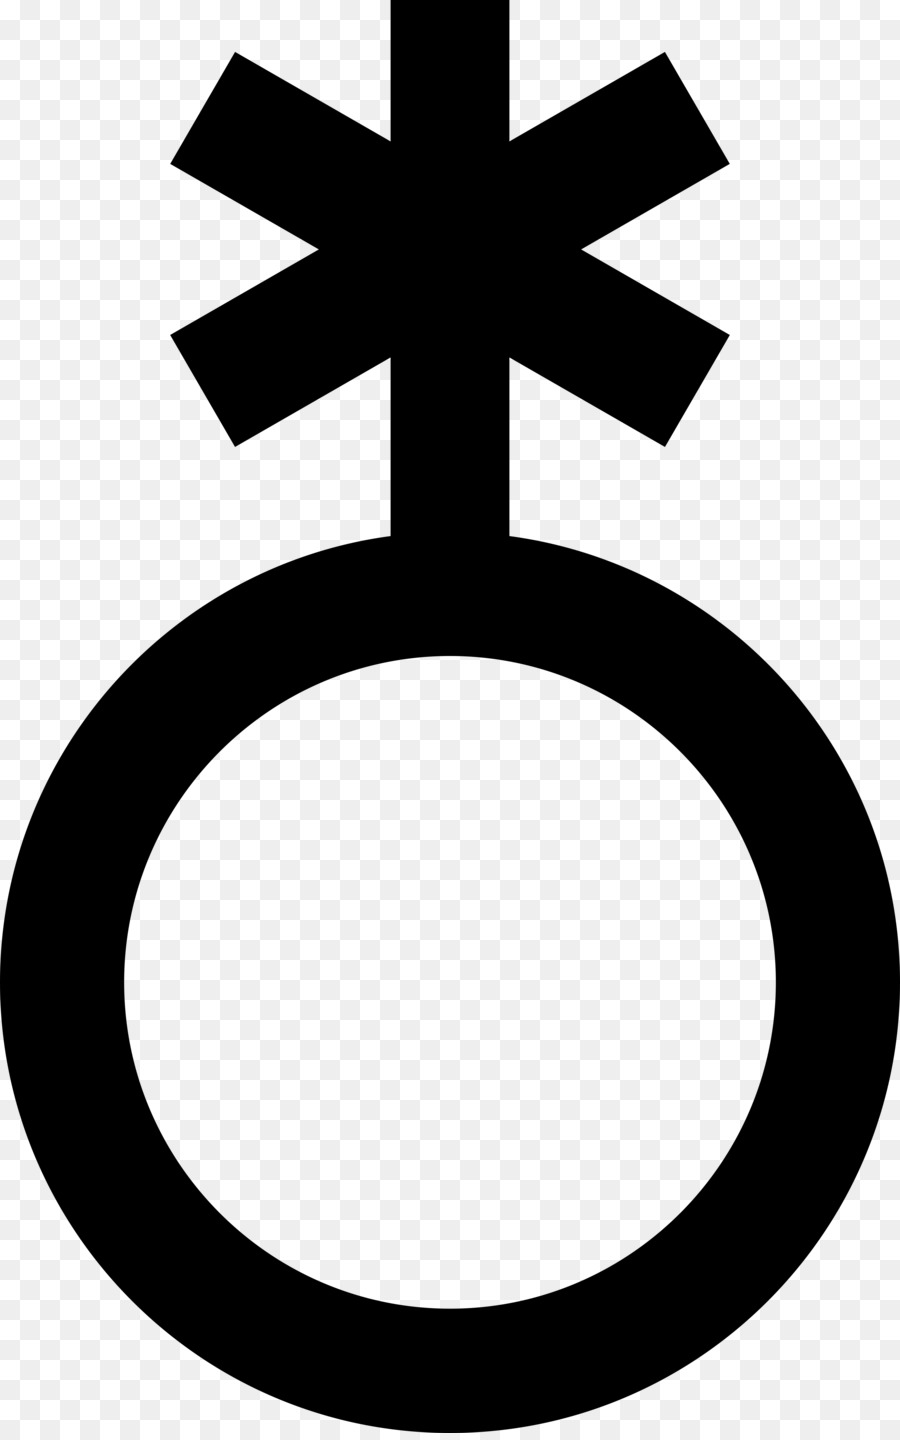 La mancanza di identità di genere Genere binario di Genere simbolo LGBT simboli - simbolo